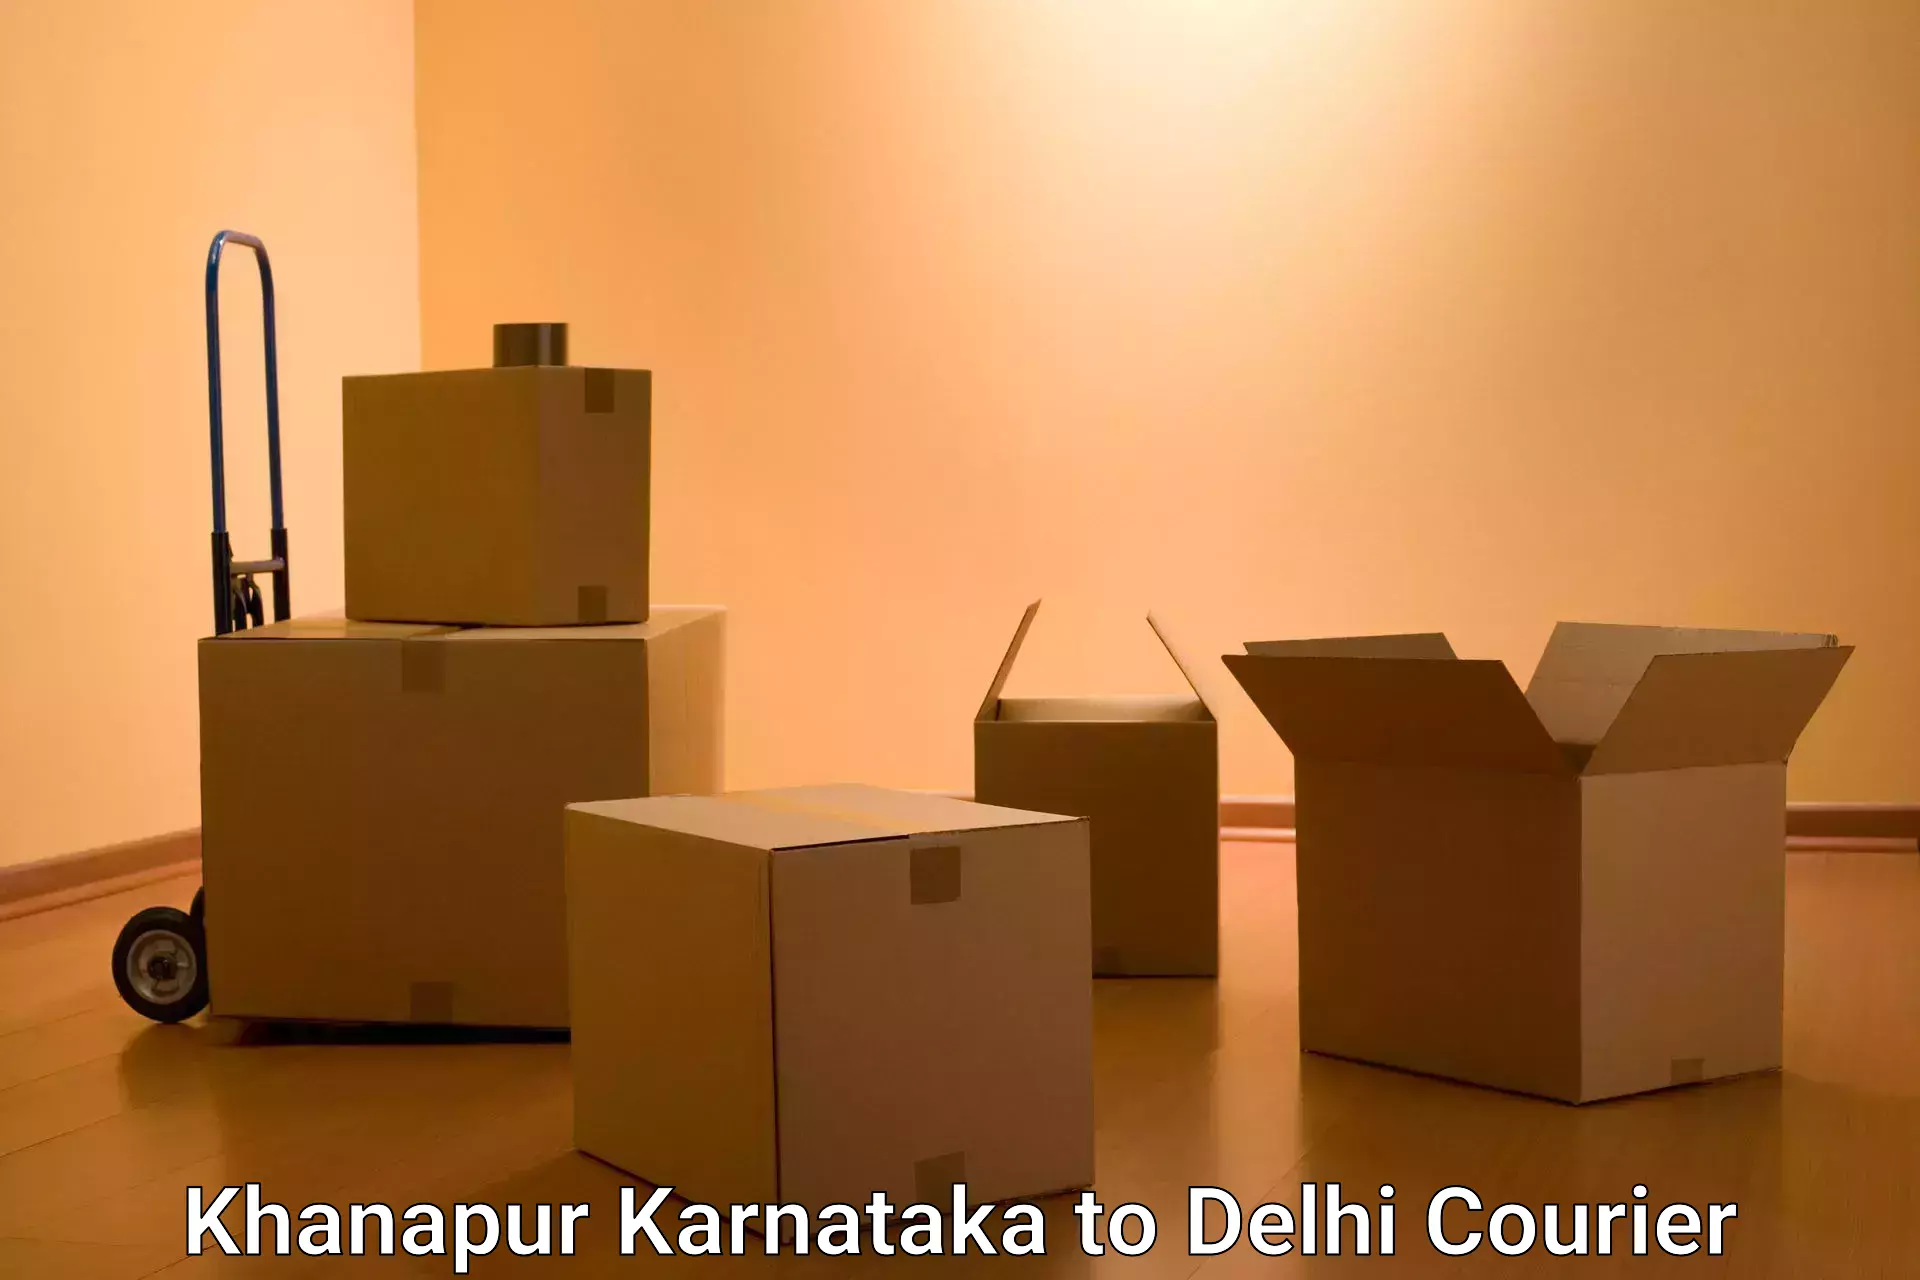 Efficient parcel tracking in Khanapur Karnataka to Sansad Marg